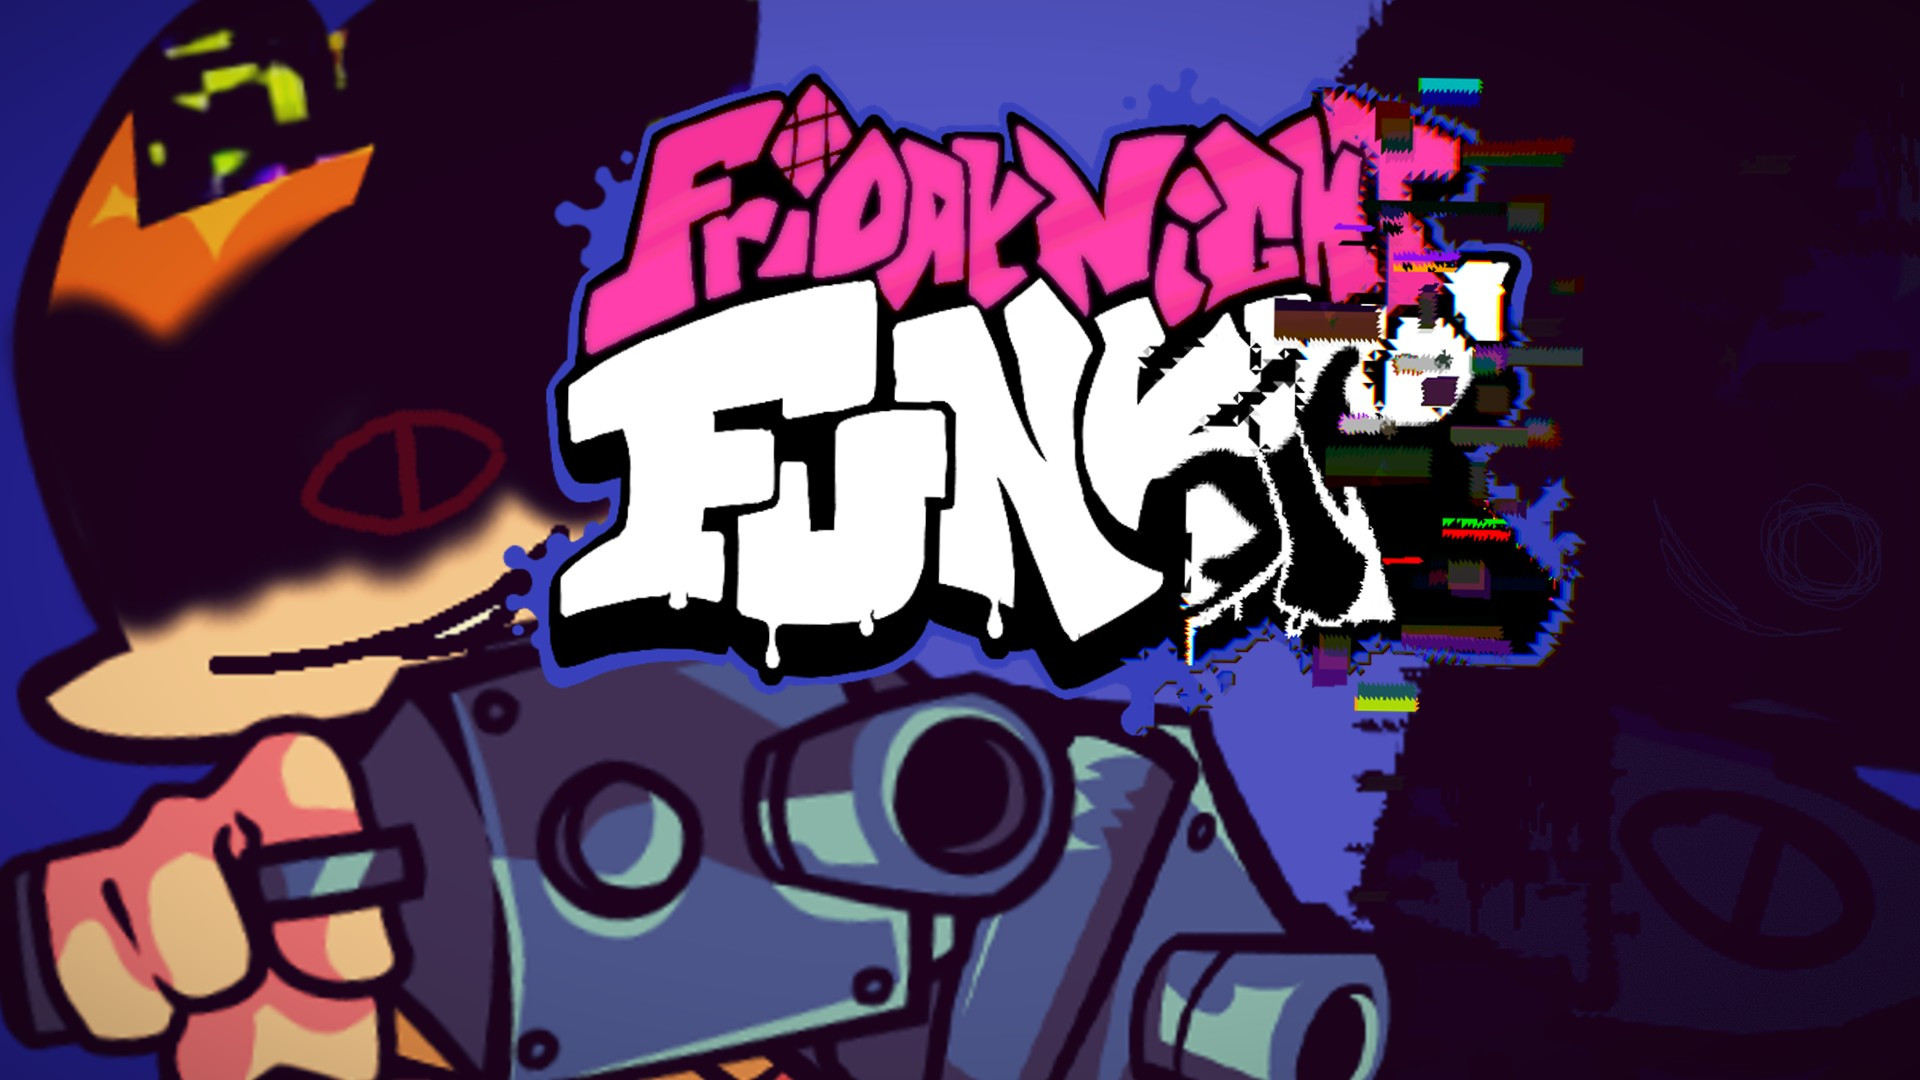 FNF Pibby Corrupted, Funkipedia Mods Wiki